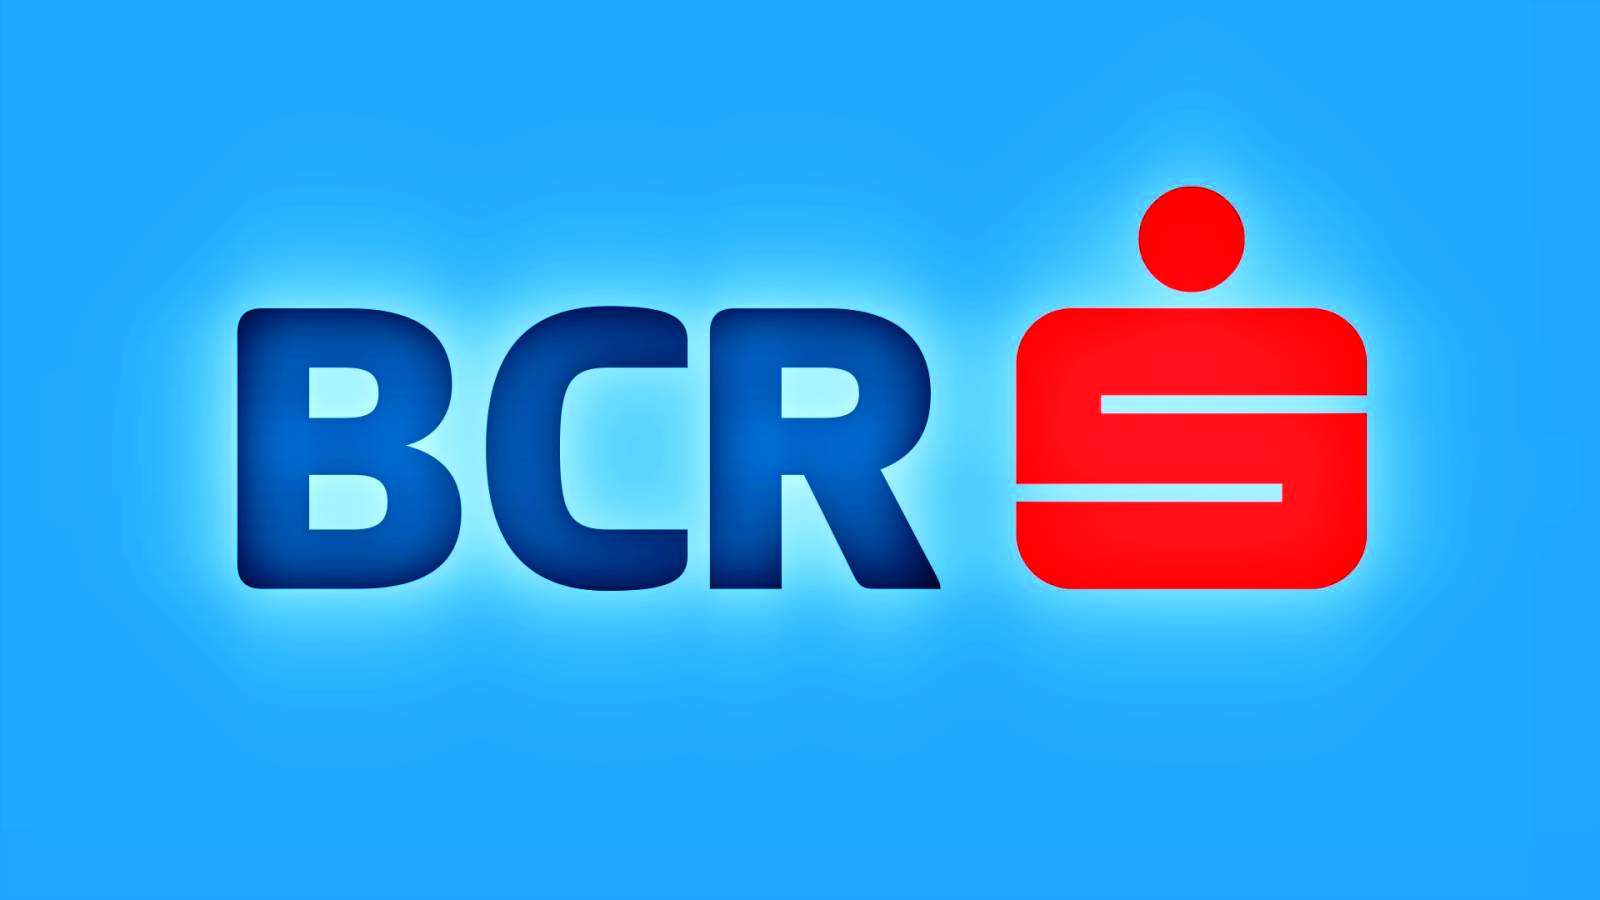 BCR Romania Asiakkaiden tiedot MOPOSED Measure maailmanlaajuisesti